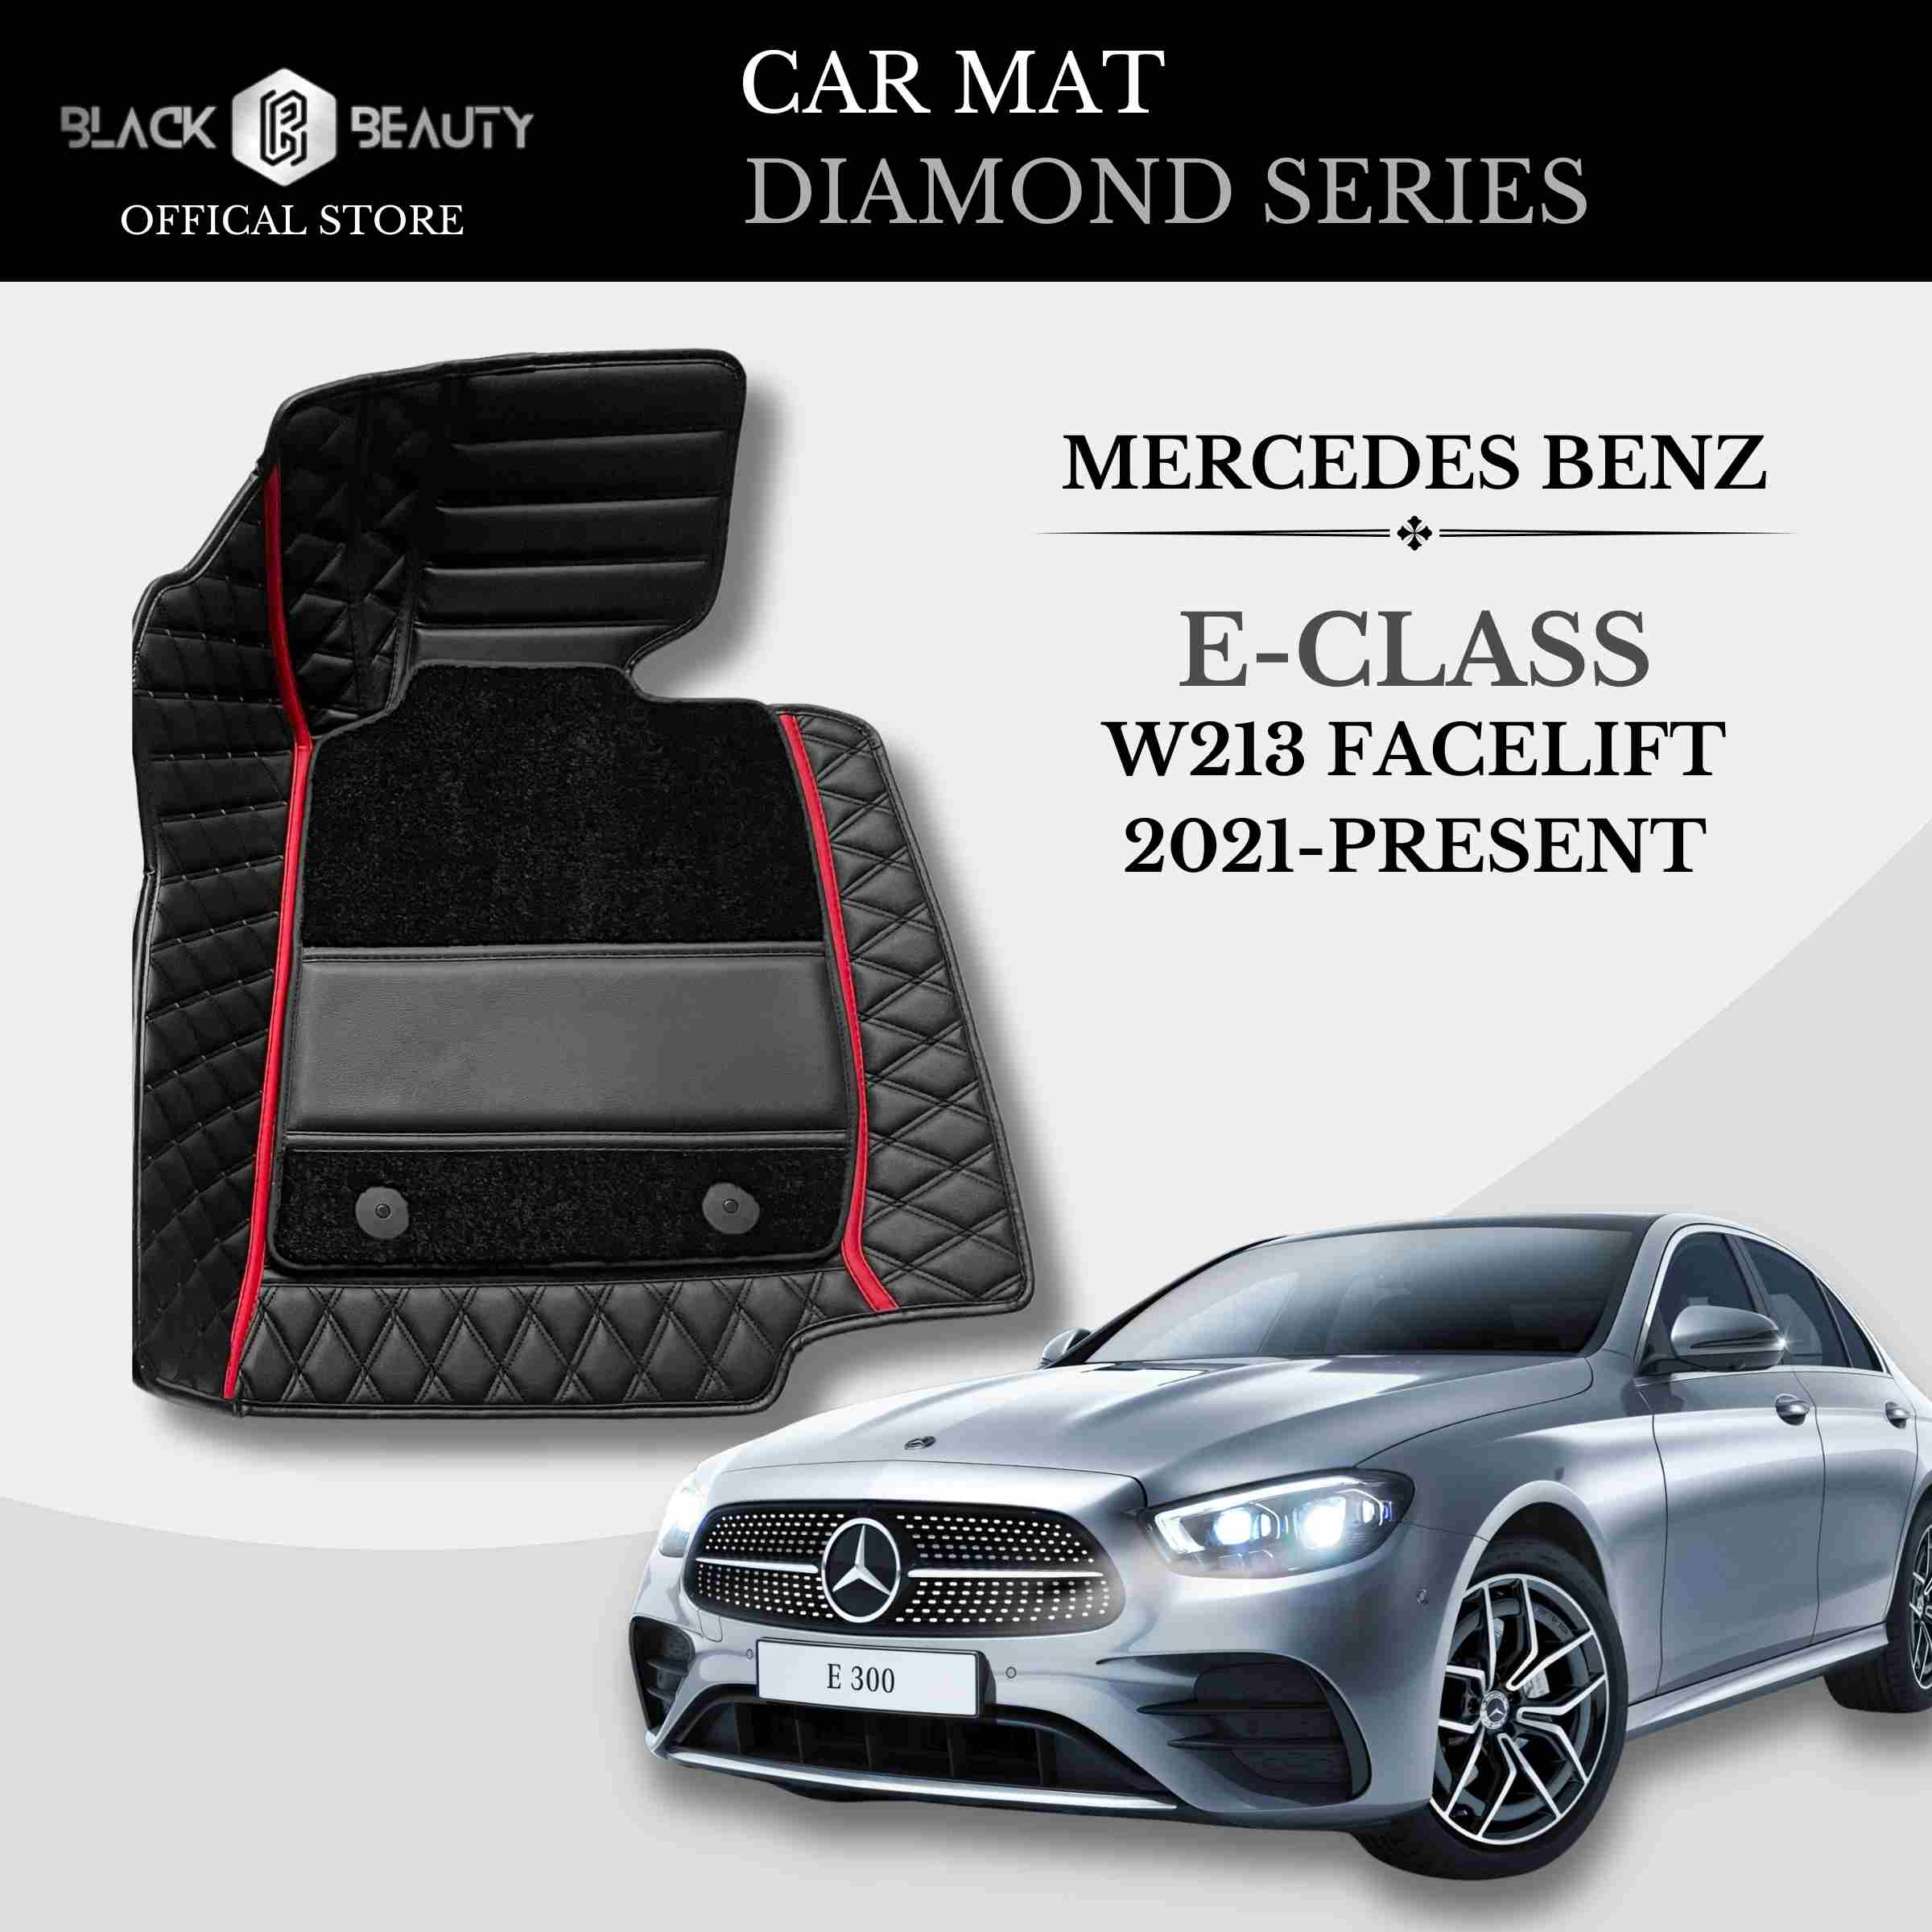 Mercedes Benz E-Class W213 Facelift (2021-Present) - Diamond Series Car Mat